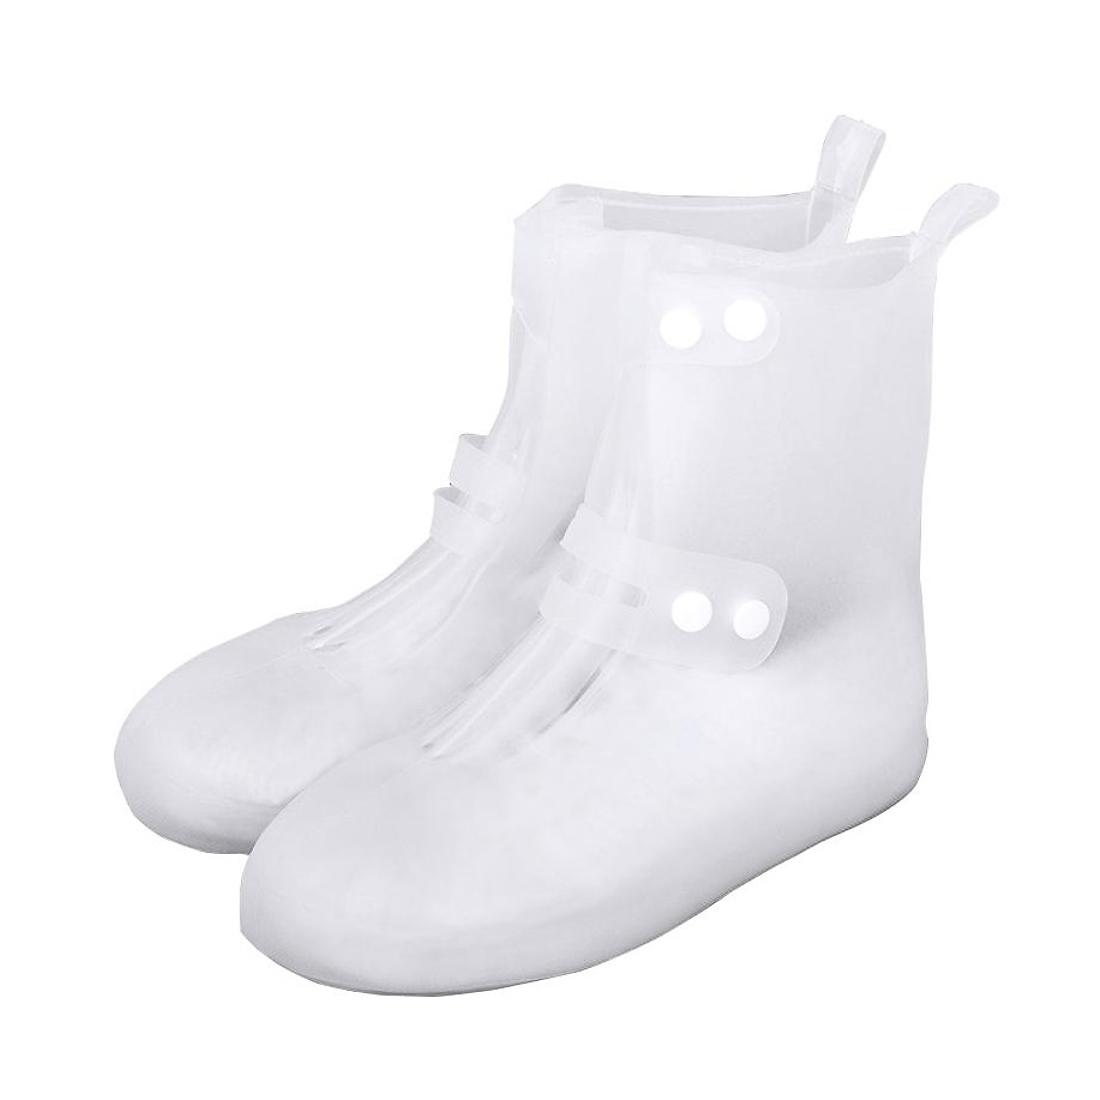 Cиликоновые чехлы-бахилы для обуви с застежкой L 42-43 CG WSS3 White